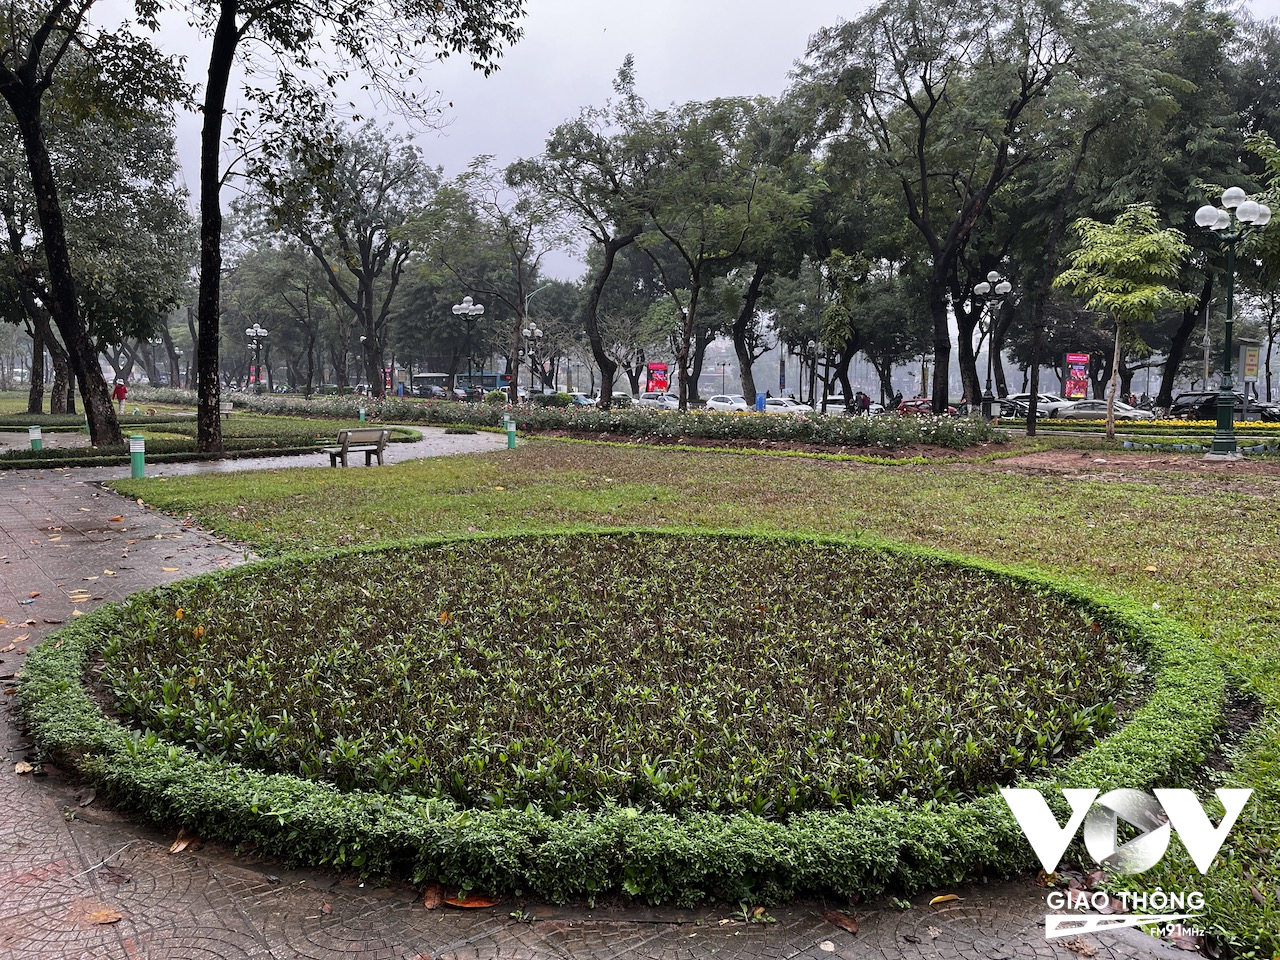 Công viên Thống Nhất có diện tích khoảng 60ha, là một trong những công trình công cộng lớn nhất ở Thủ đô với rất nhiều cây xanh, hồ nước, nằm ở vị trí trung tâm và là công sức của rất nhiều thanh niên tình nguyện Thủ đô từ những năm 1960 tham gia xây dựng...